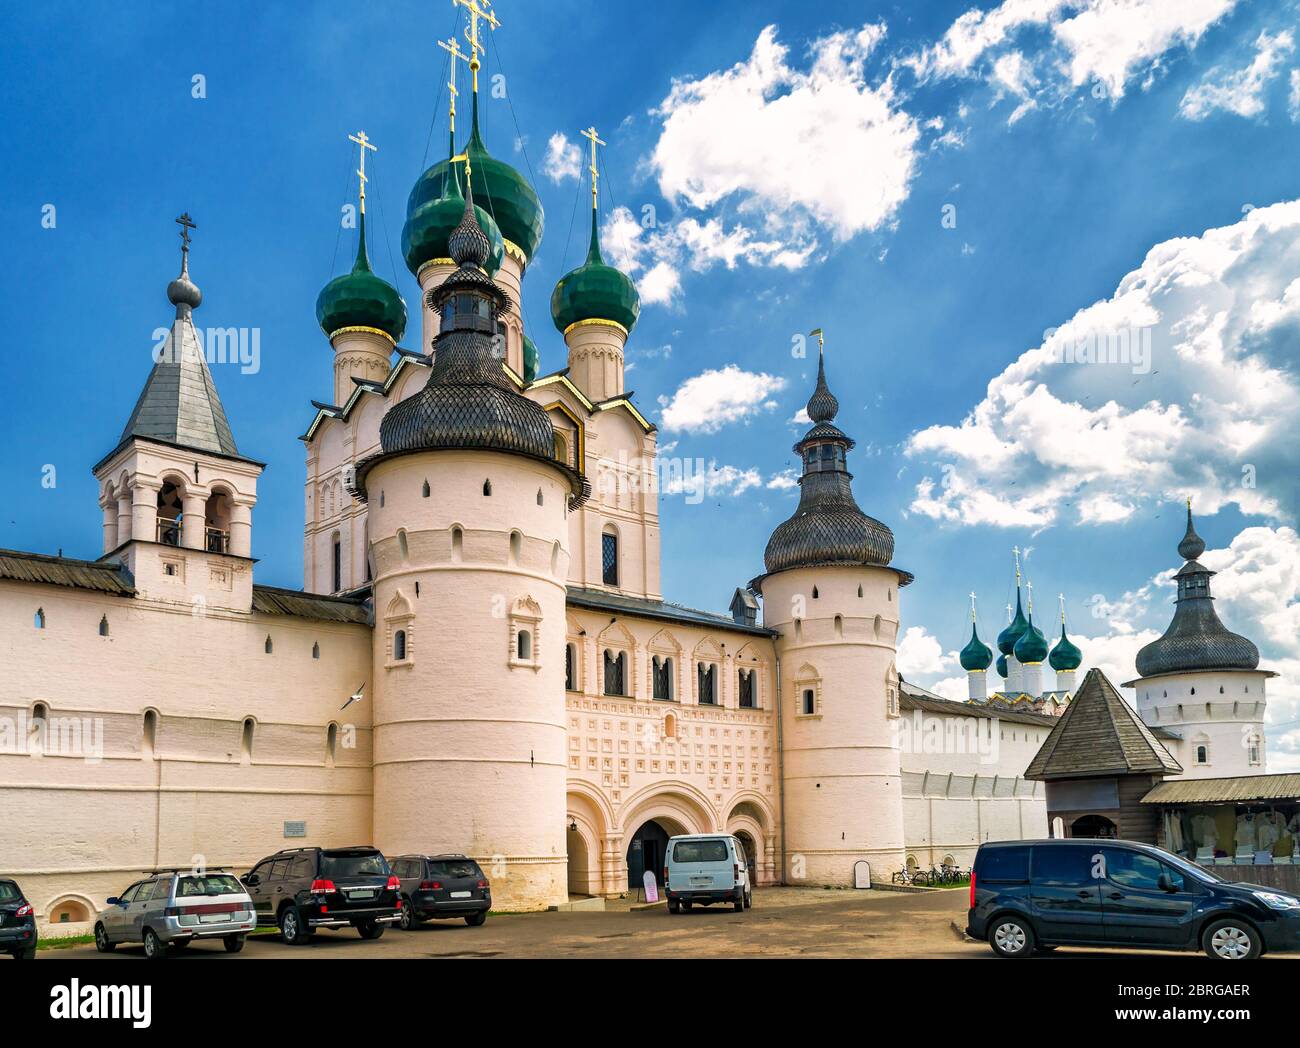 Kreml der antiken Stadt Rostow der große, Russland. In der UNESCO-Welterbeliste enthalten. Stockfoto